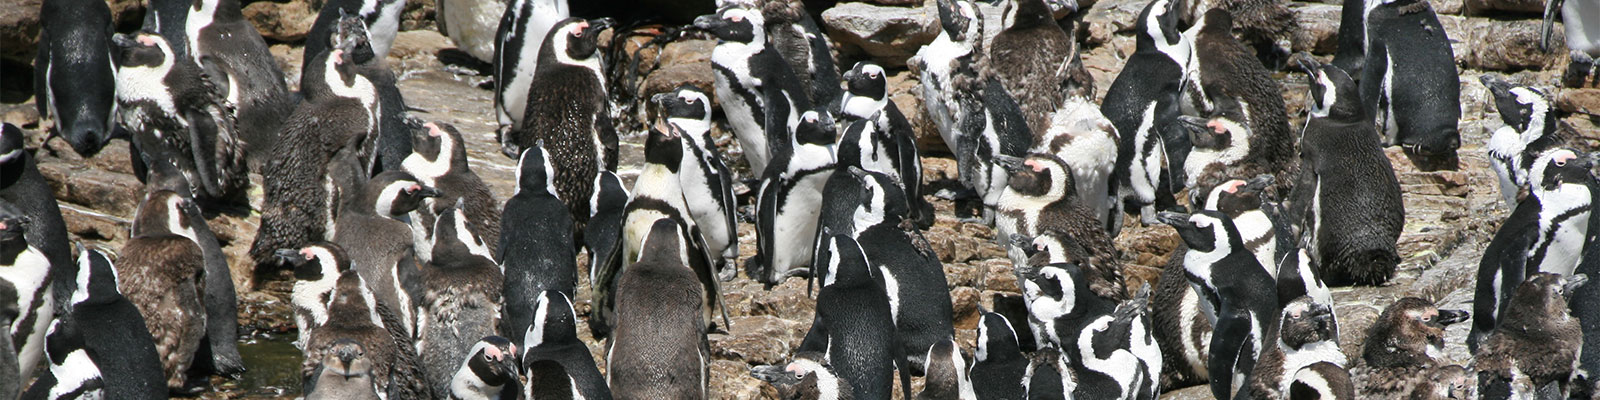 Südafrika Stoney Point: Pinguine